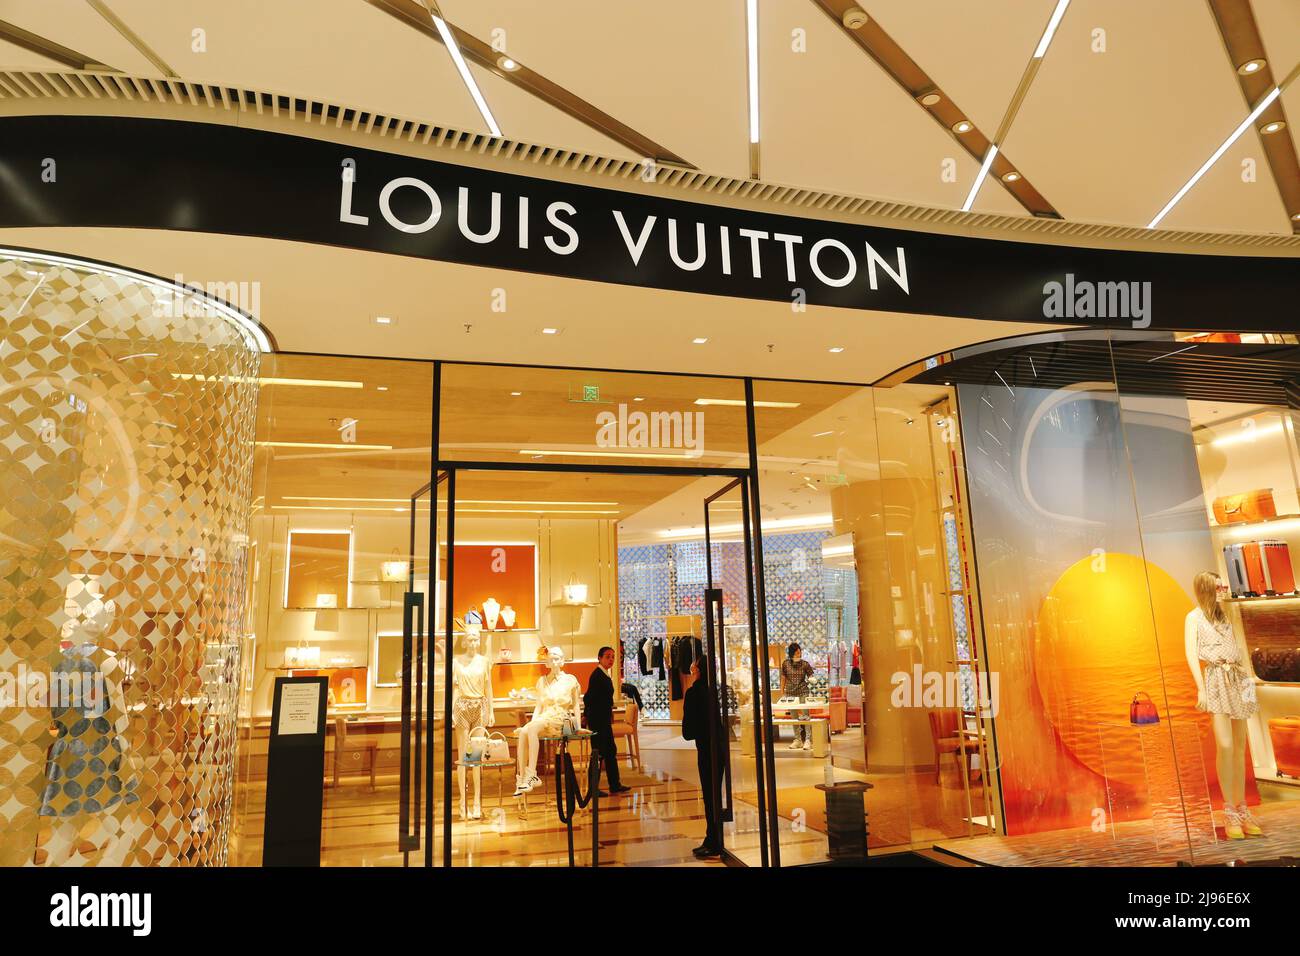 Louis Vuitton store – Stock Editorial Photo © teamtime #125319492